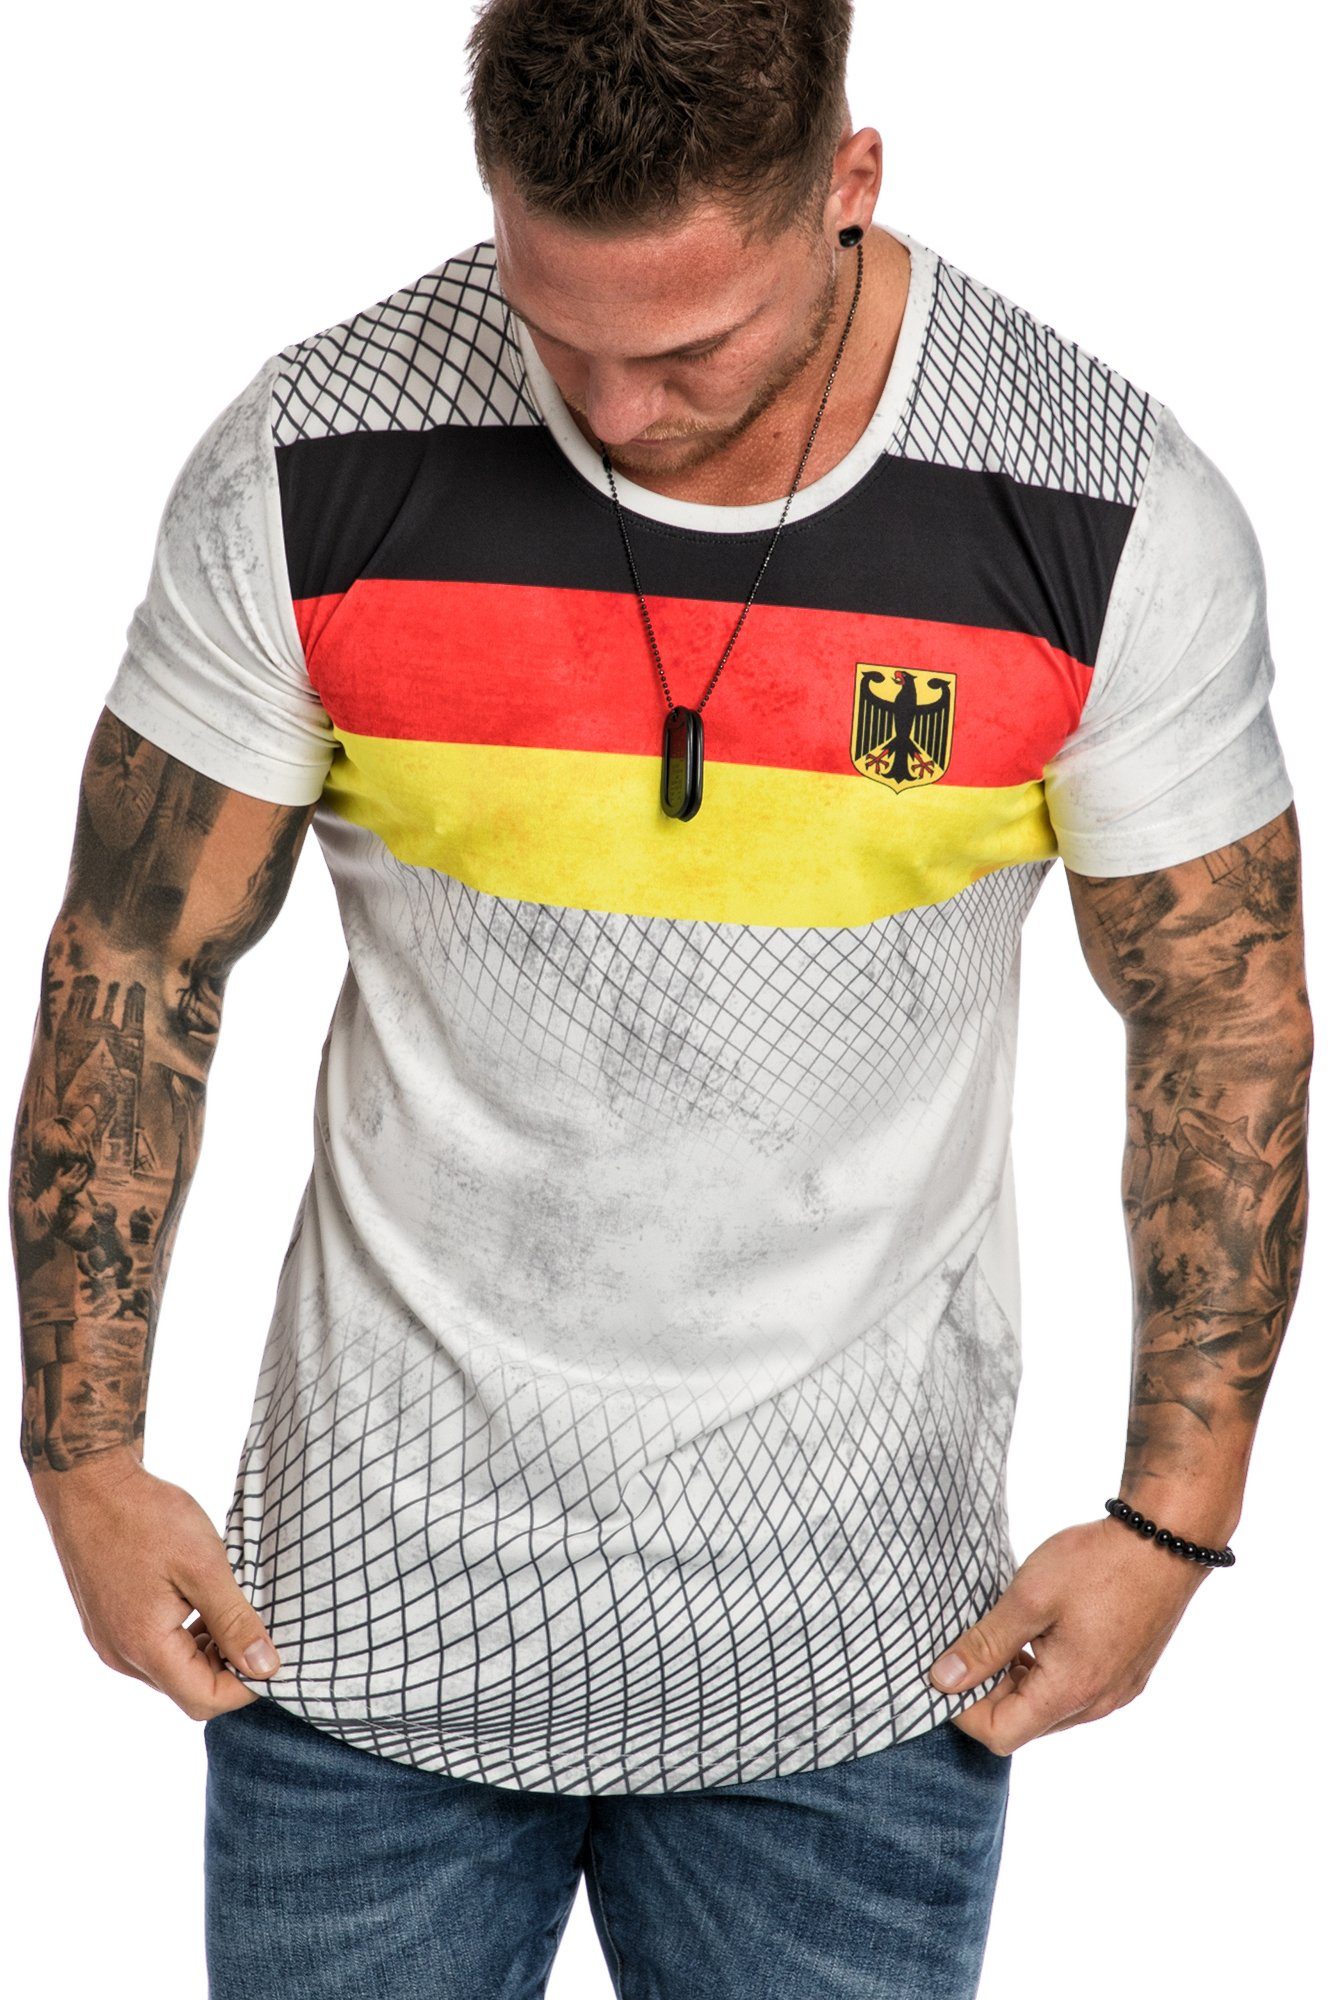 EM T-Shirt Weiß Rundhalsausschnitt Neck Länder Herren Oversize REPUBLIX EMWM WM Shirt Deutschland Crew mit